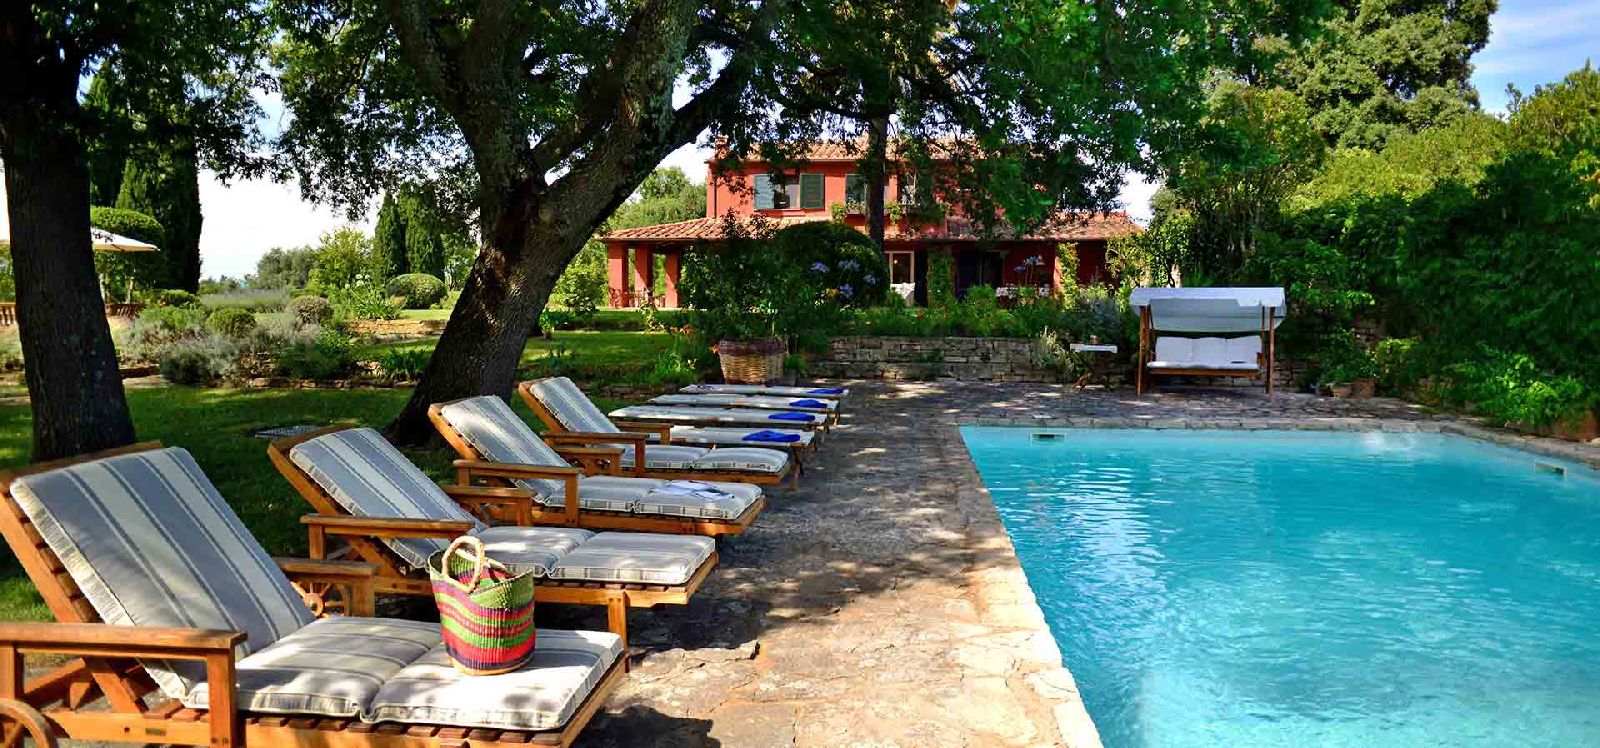 Swimming pool and terrace of villa La Civetta in Tuscany